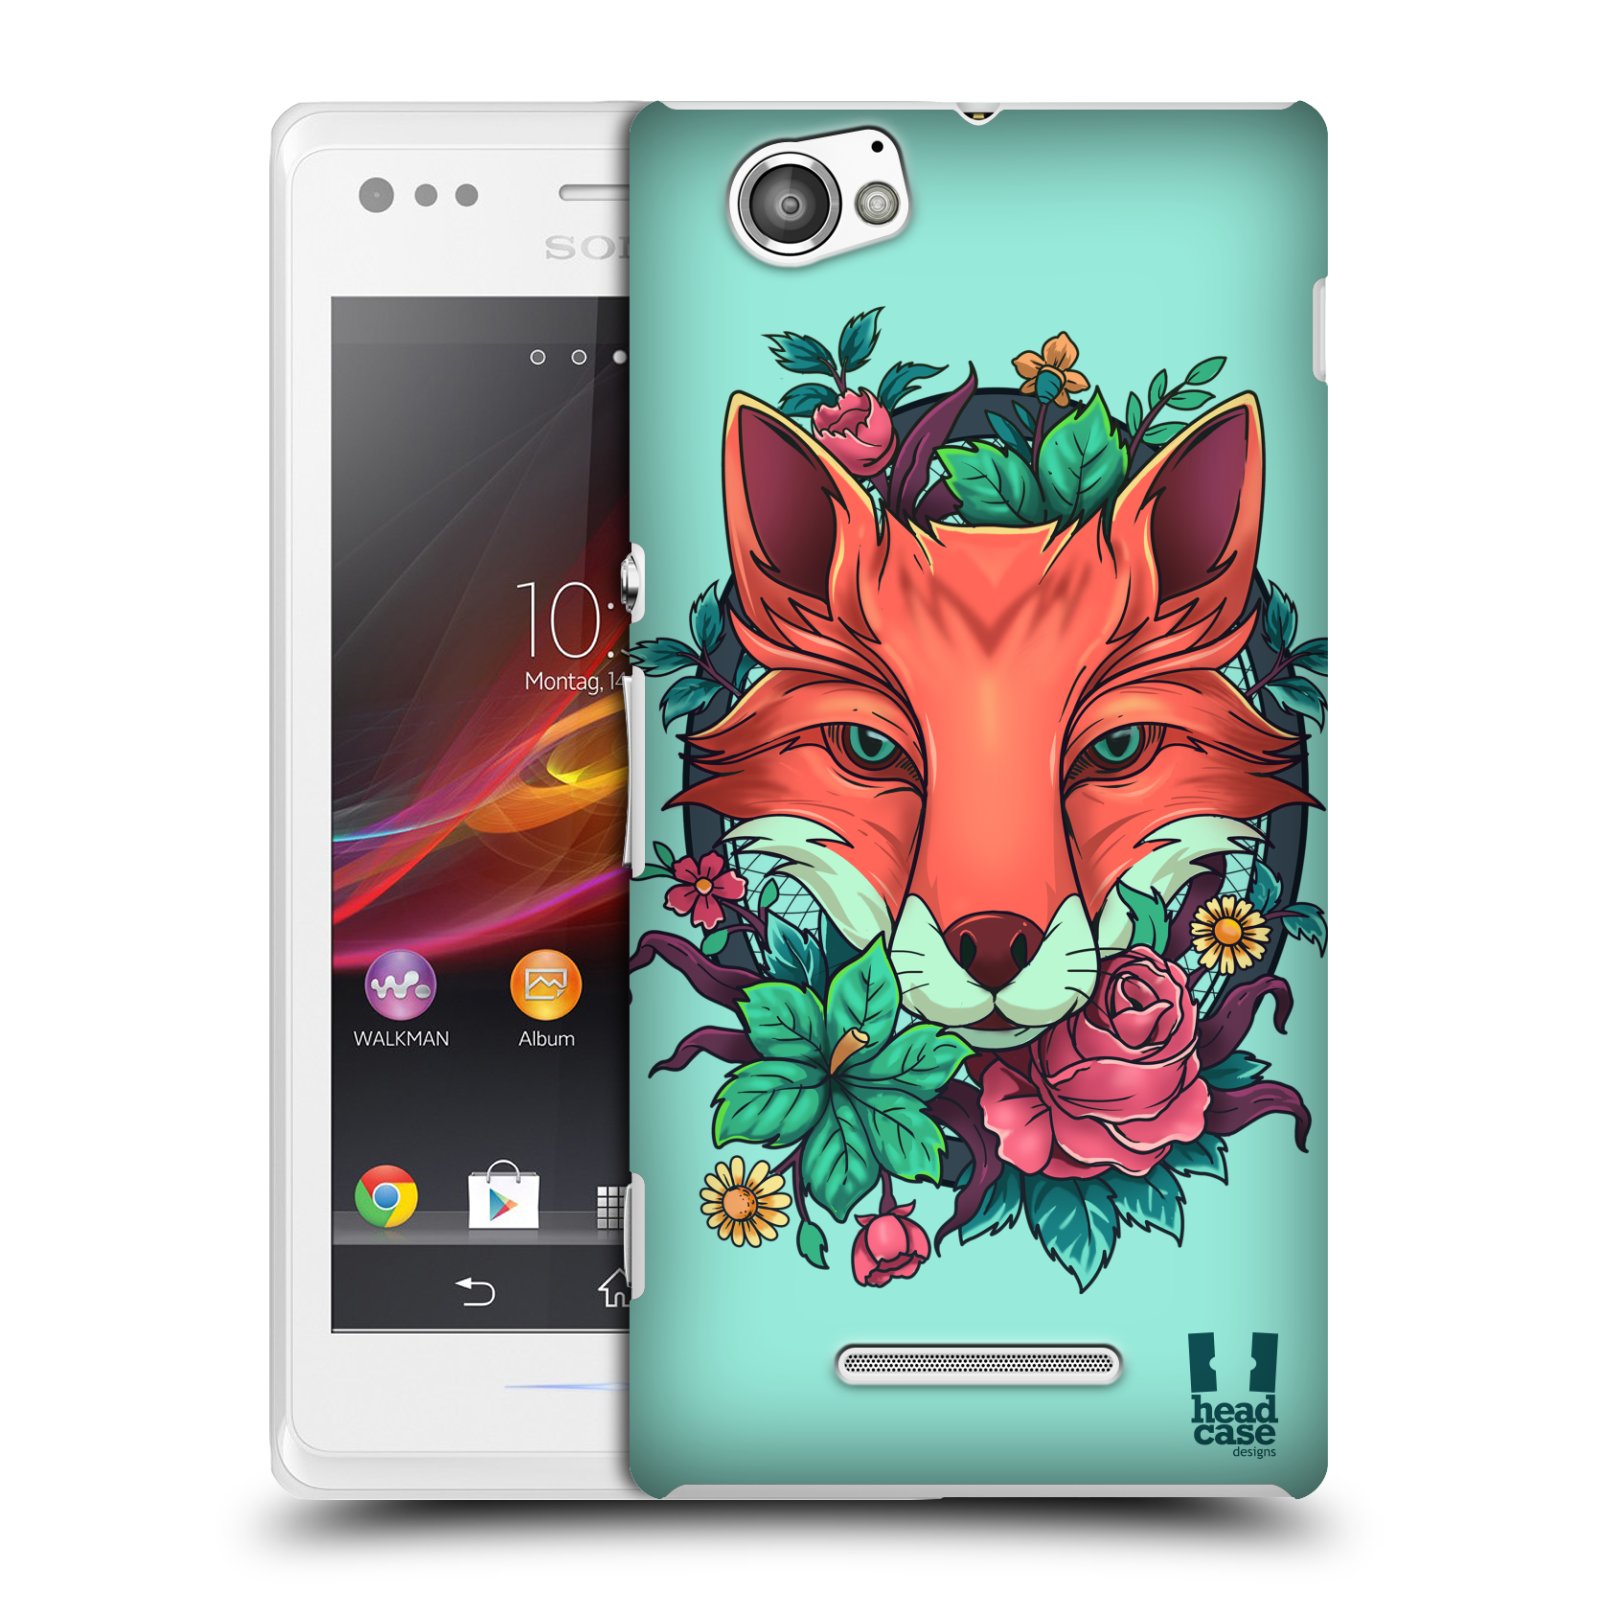 HEAD CASE plastový obal na mobil Sony Xperia M vzor Flóra a Fauna liška